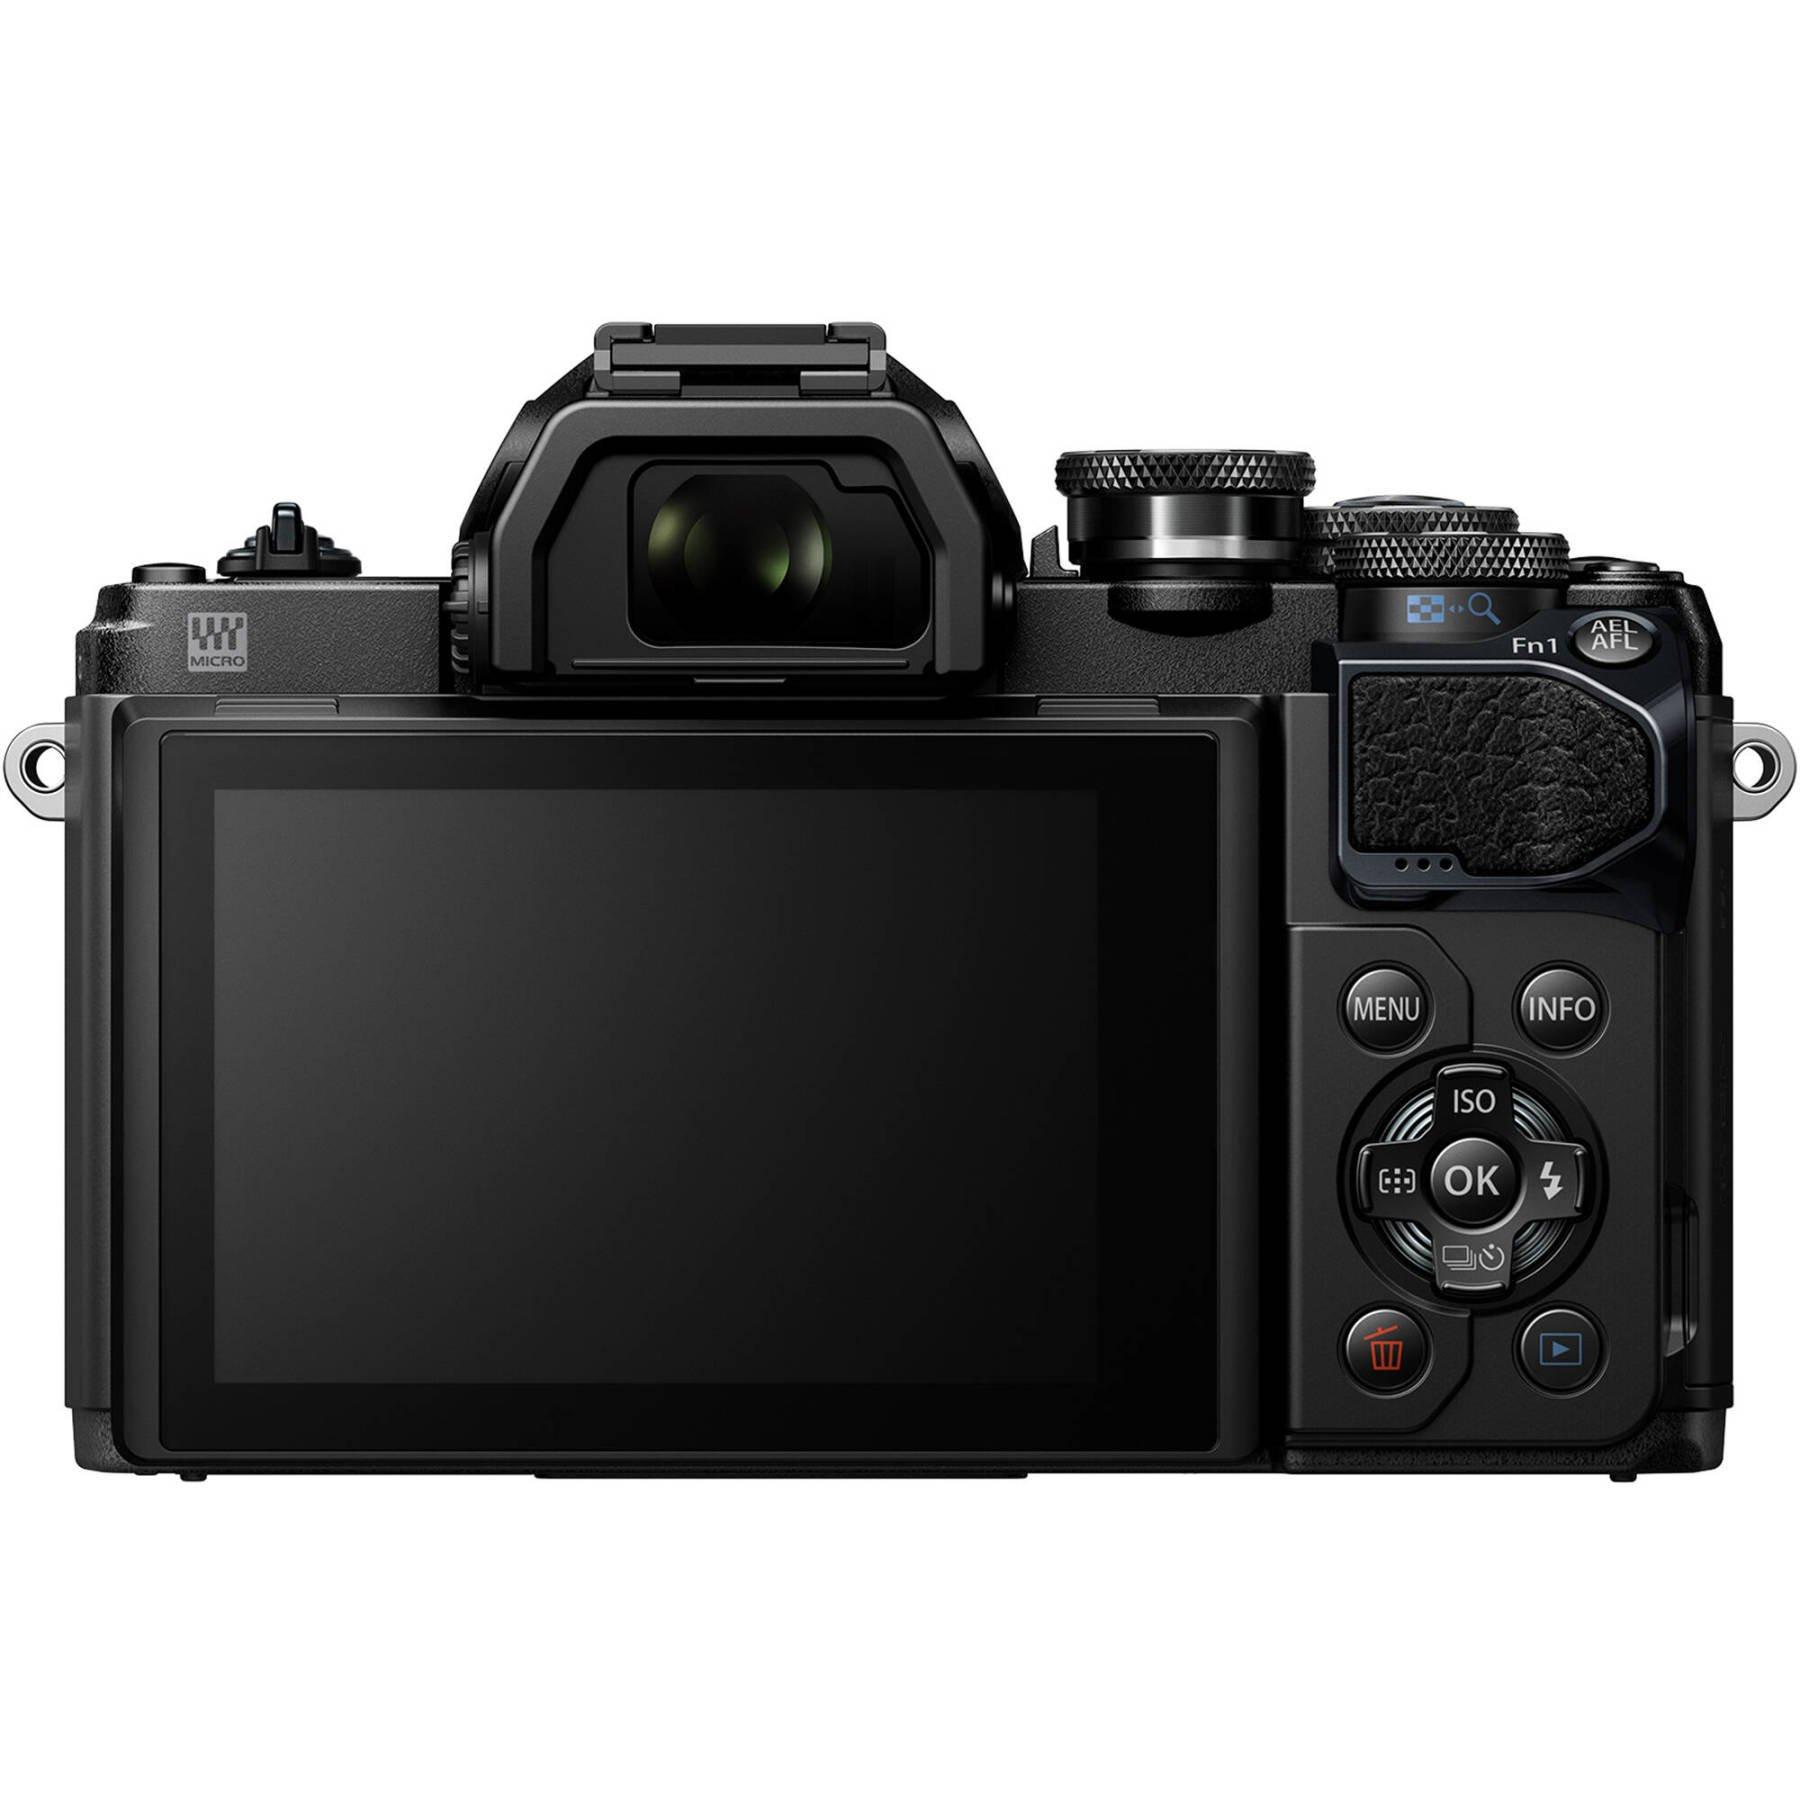 売れ済公式店 OLYMPUS II Mark E-M10 OM-D デジタルカメラ